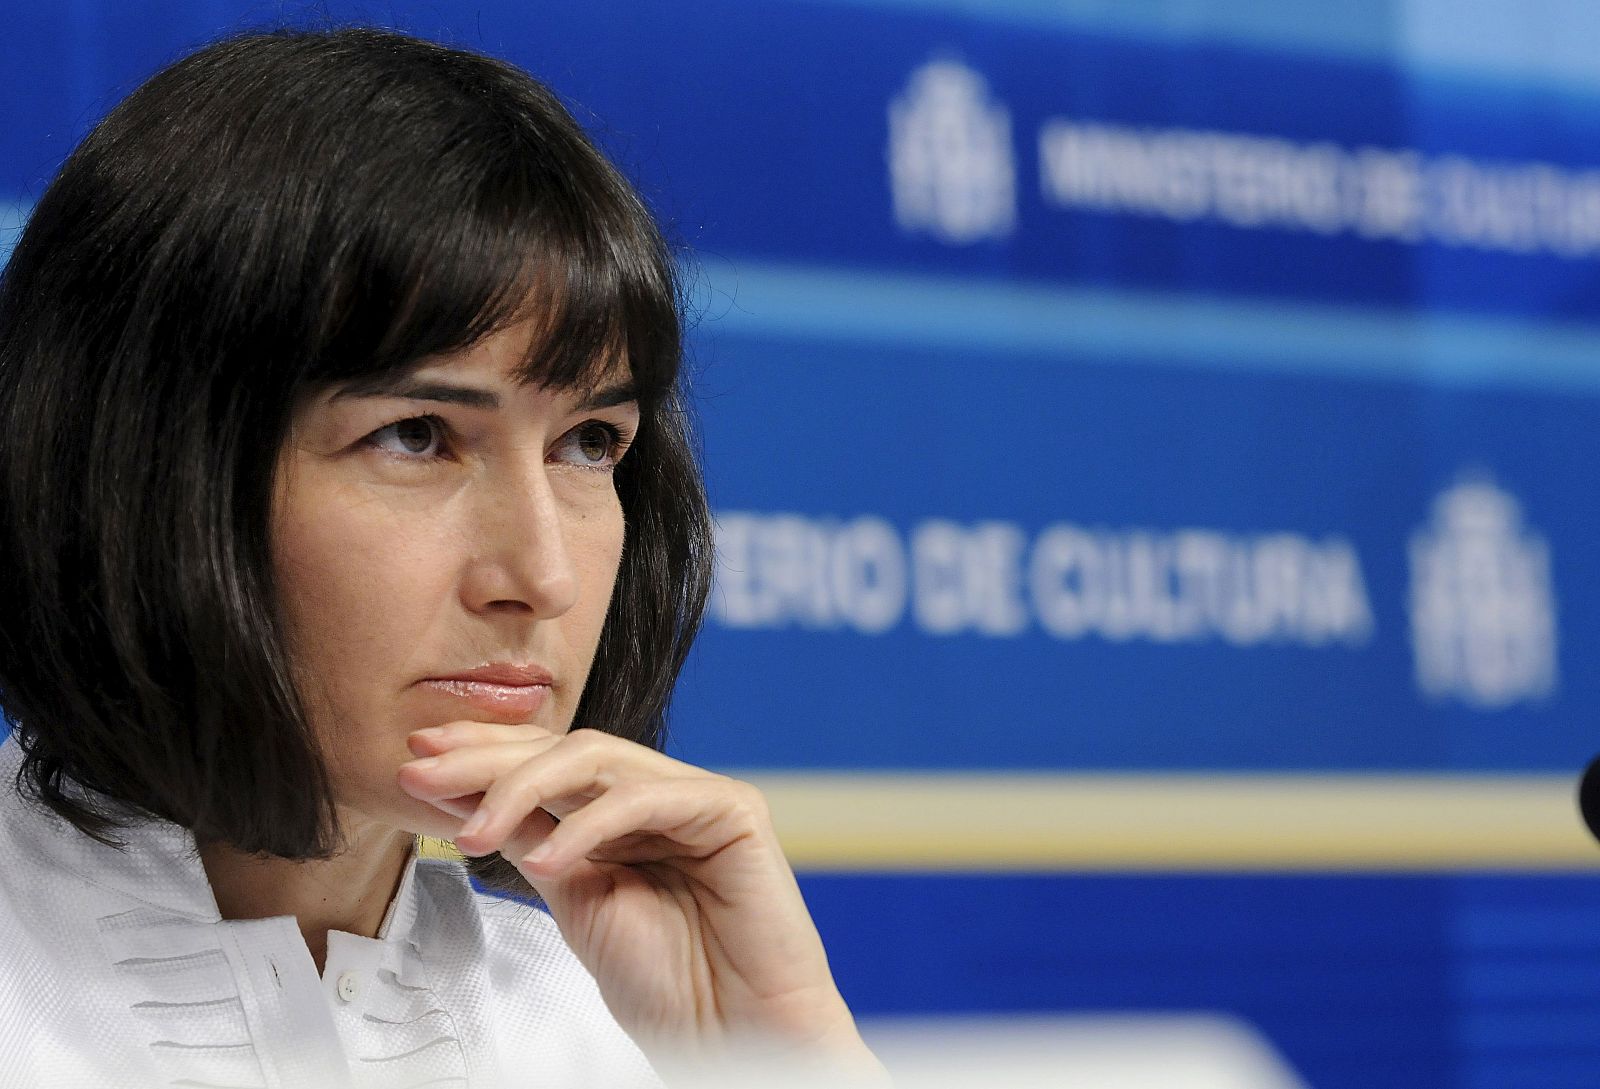 La ministra de Cultura, Ángeles González-Sinde, presentó hoy, en la sede del Ministerio, los presupuestos de su departamento para 2010.